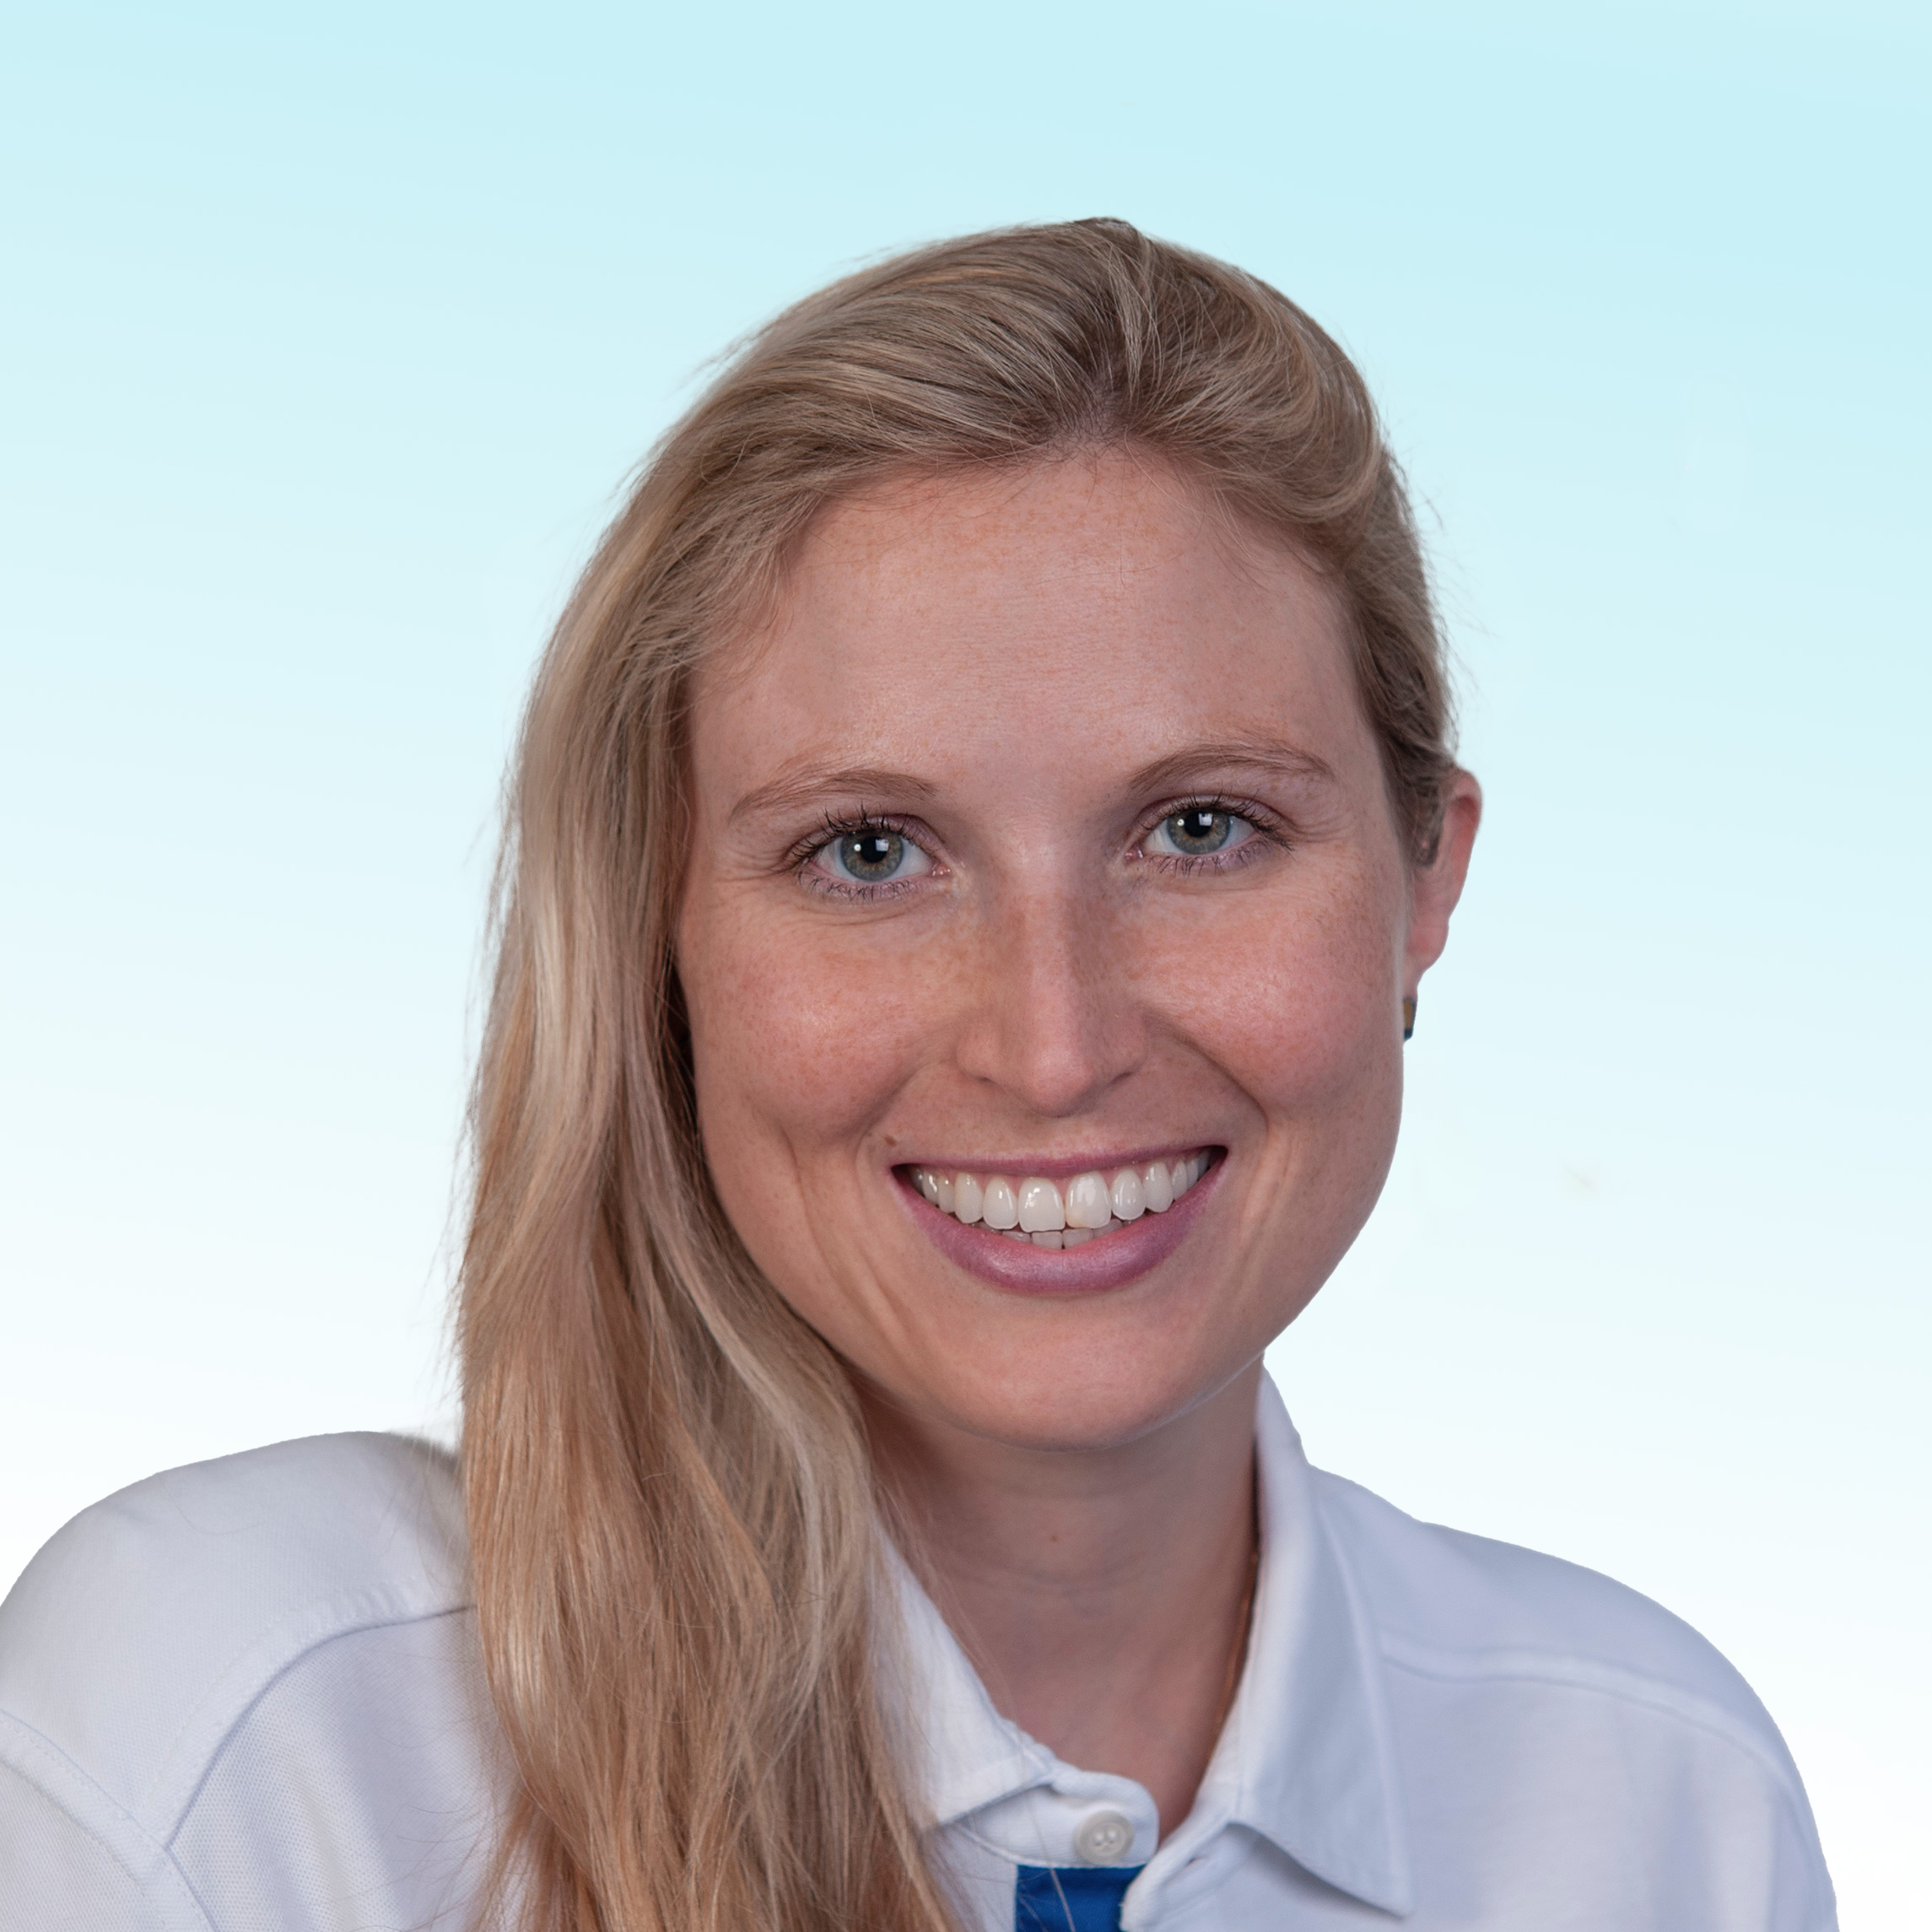 Dermatologist, Dr. med. dent. Fabienne Bosshard-Gerber